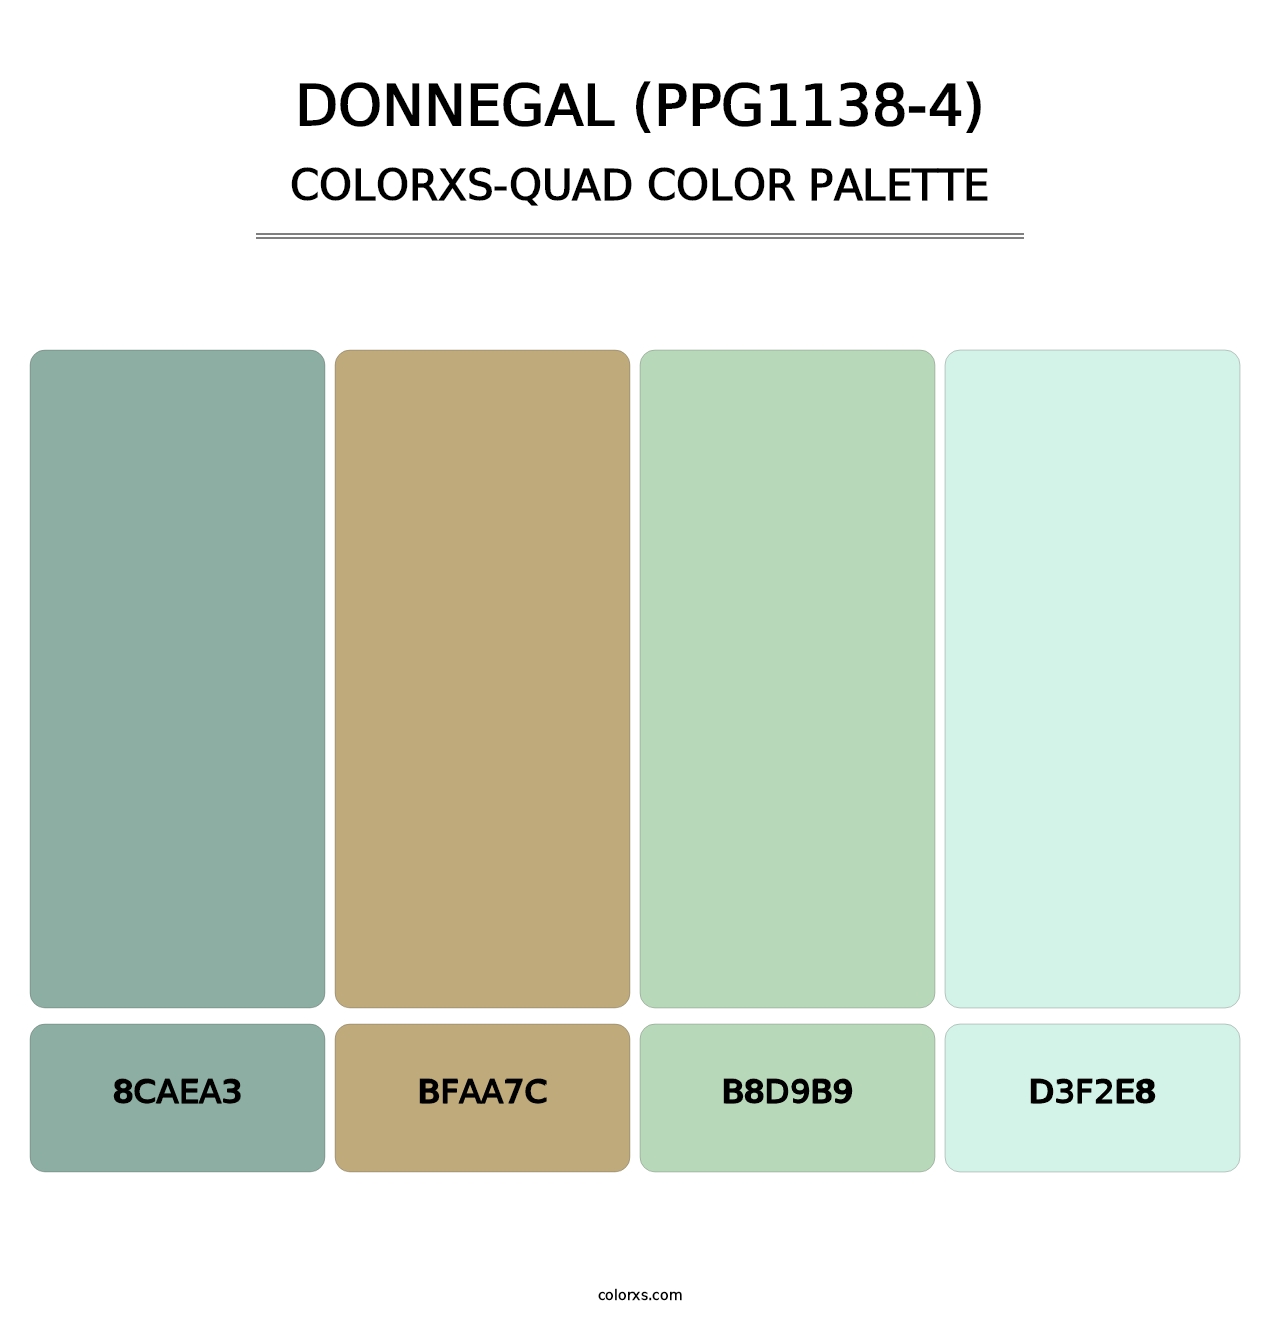 Donnegal (PPG1138-4) - Colorxs Quad Palette